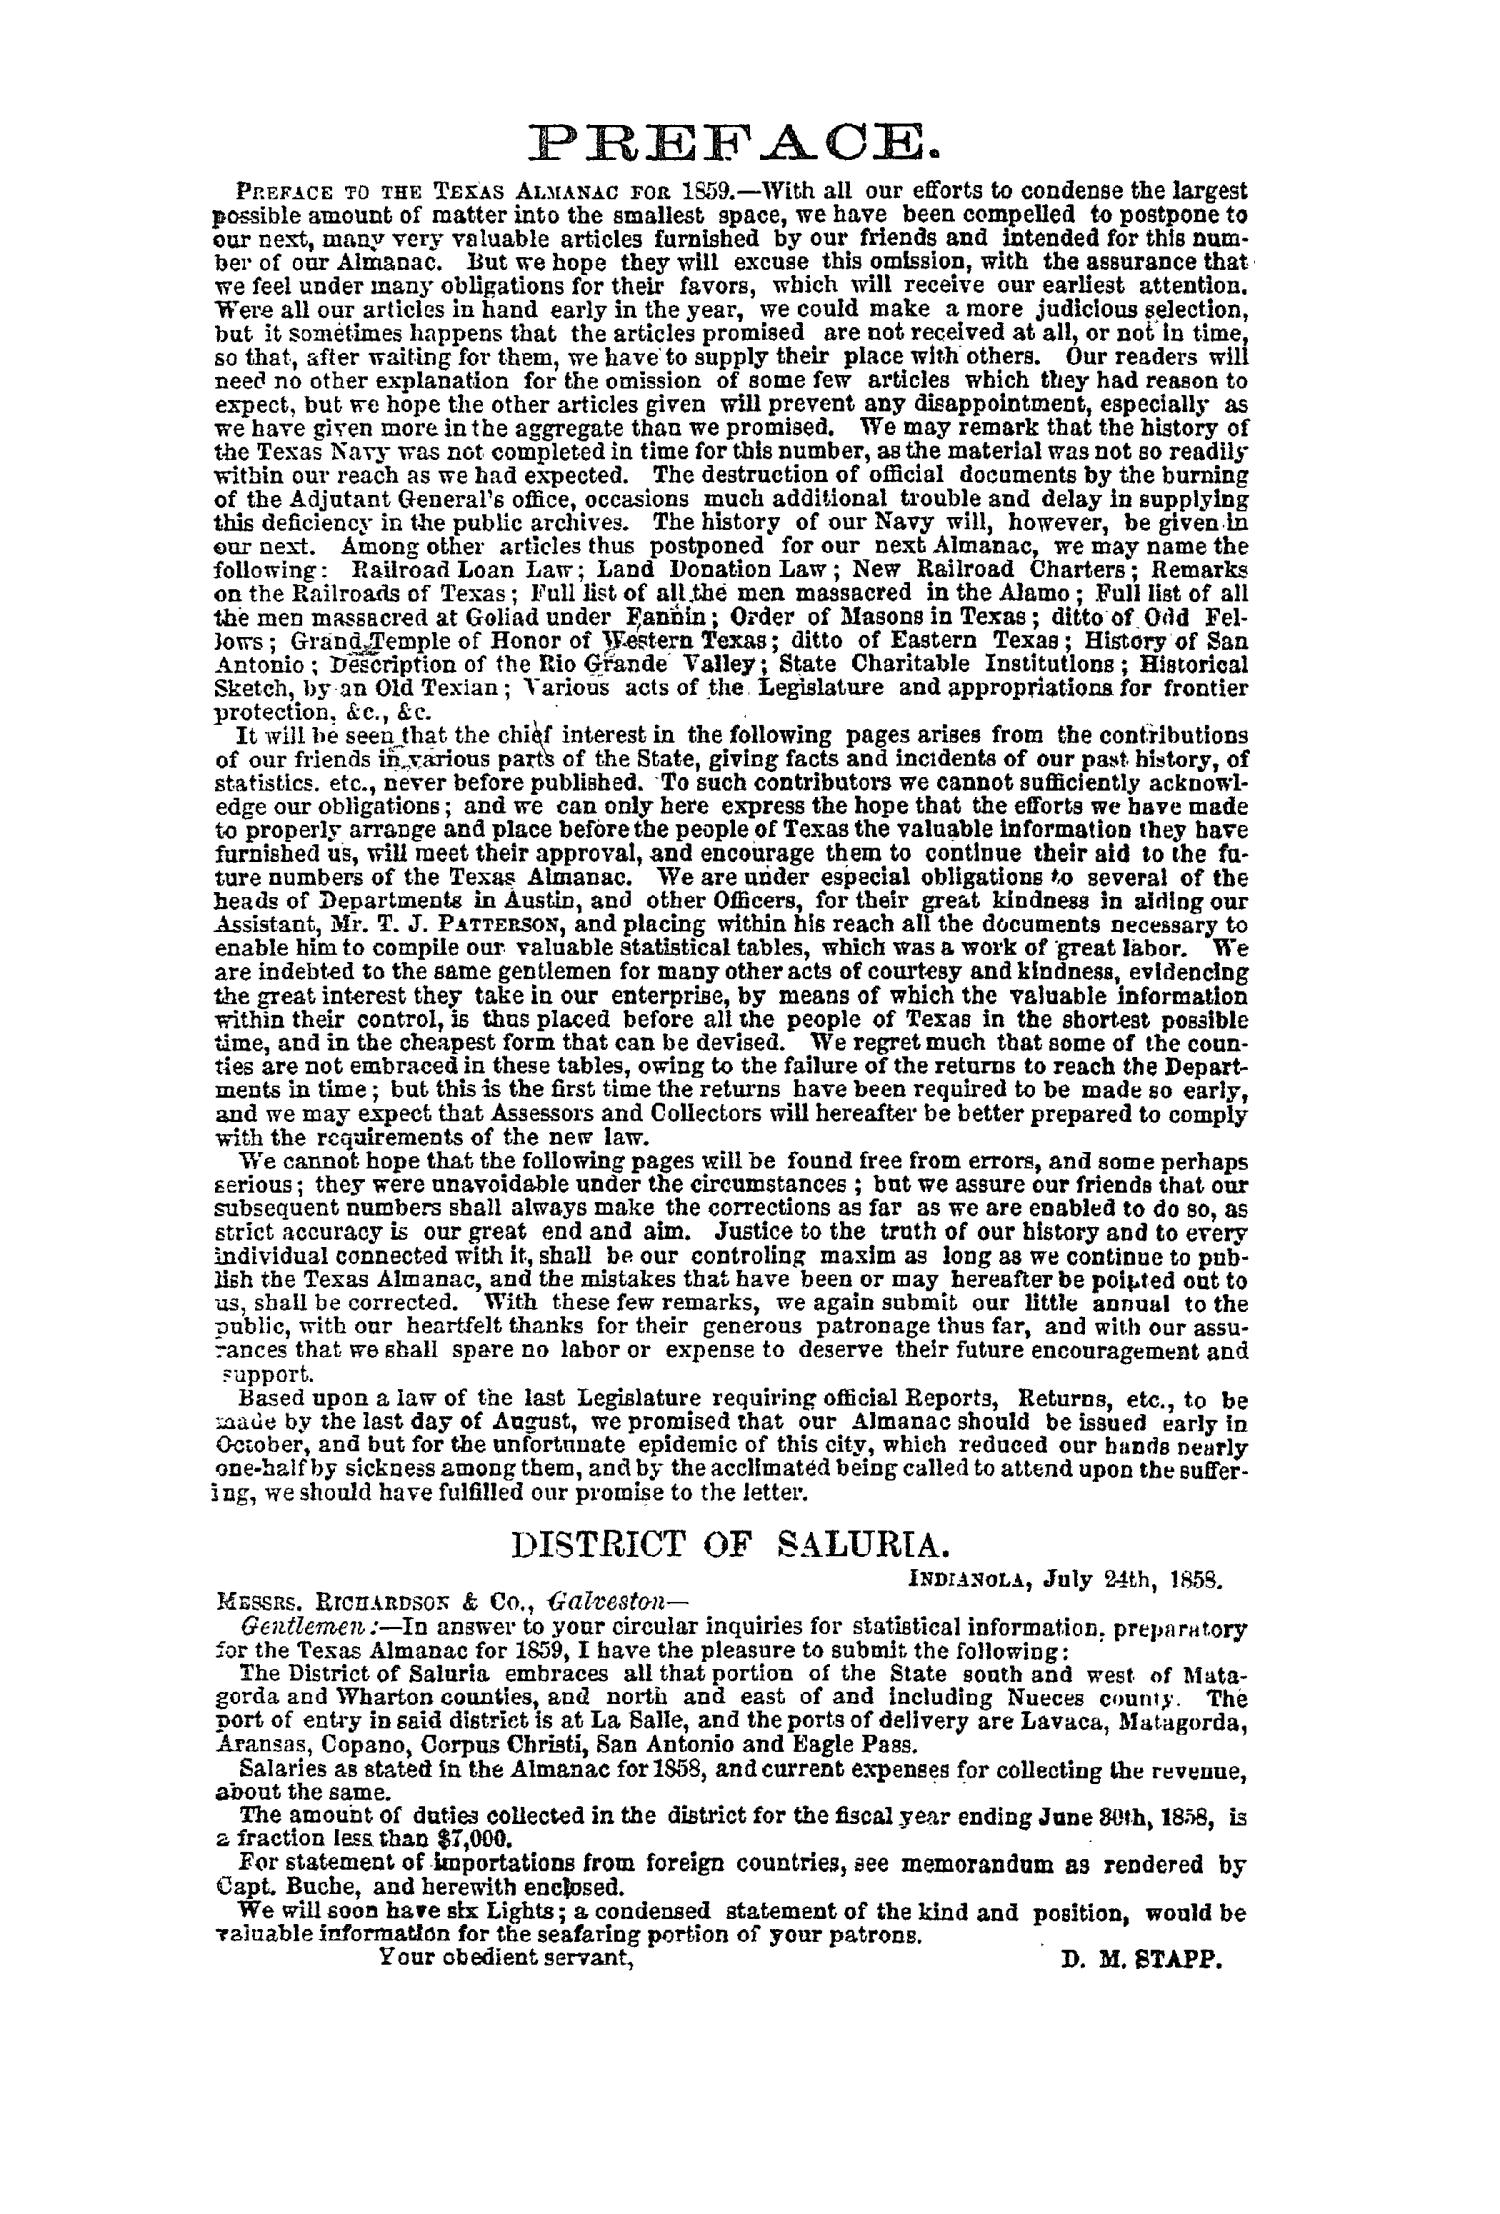 Texas Almanac, 1859
                                                
                                                    2
                                                